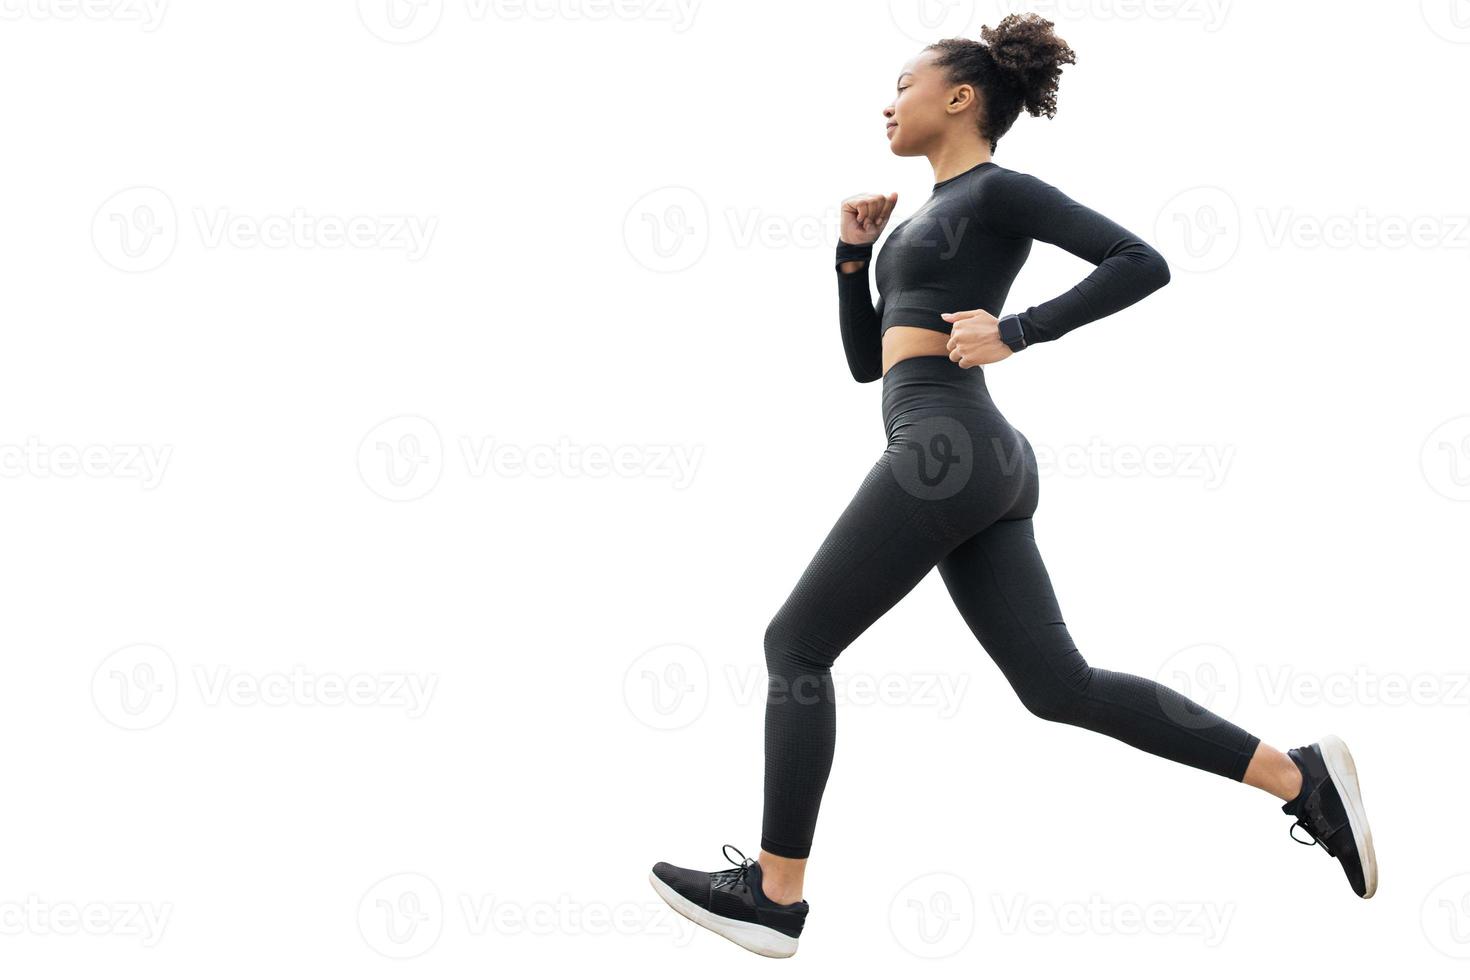 une coureuse fait de l'exercice physique dans un survêtement moulant. photo